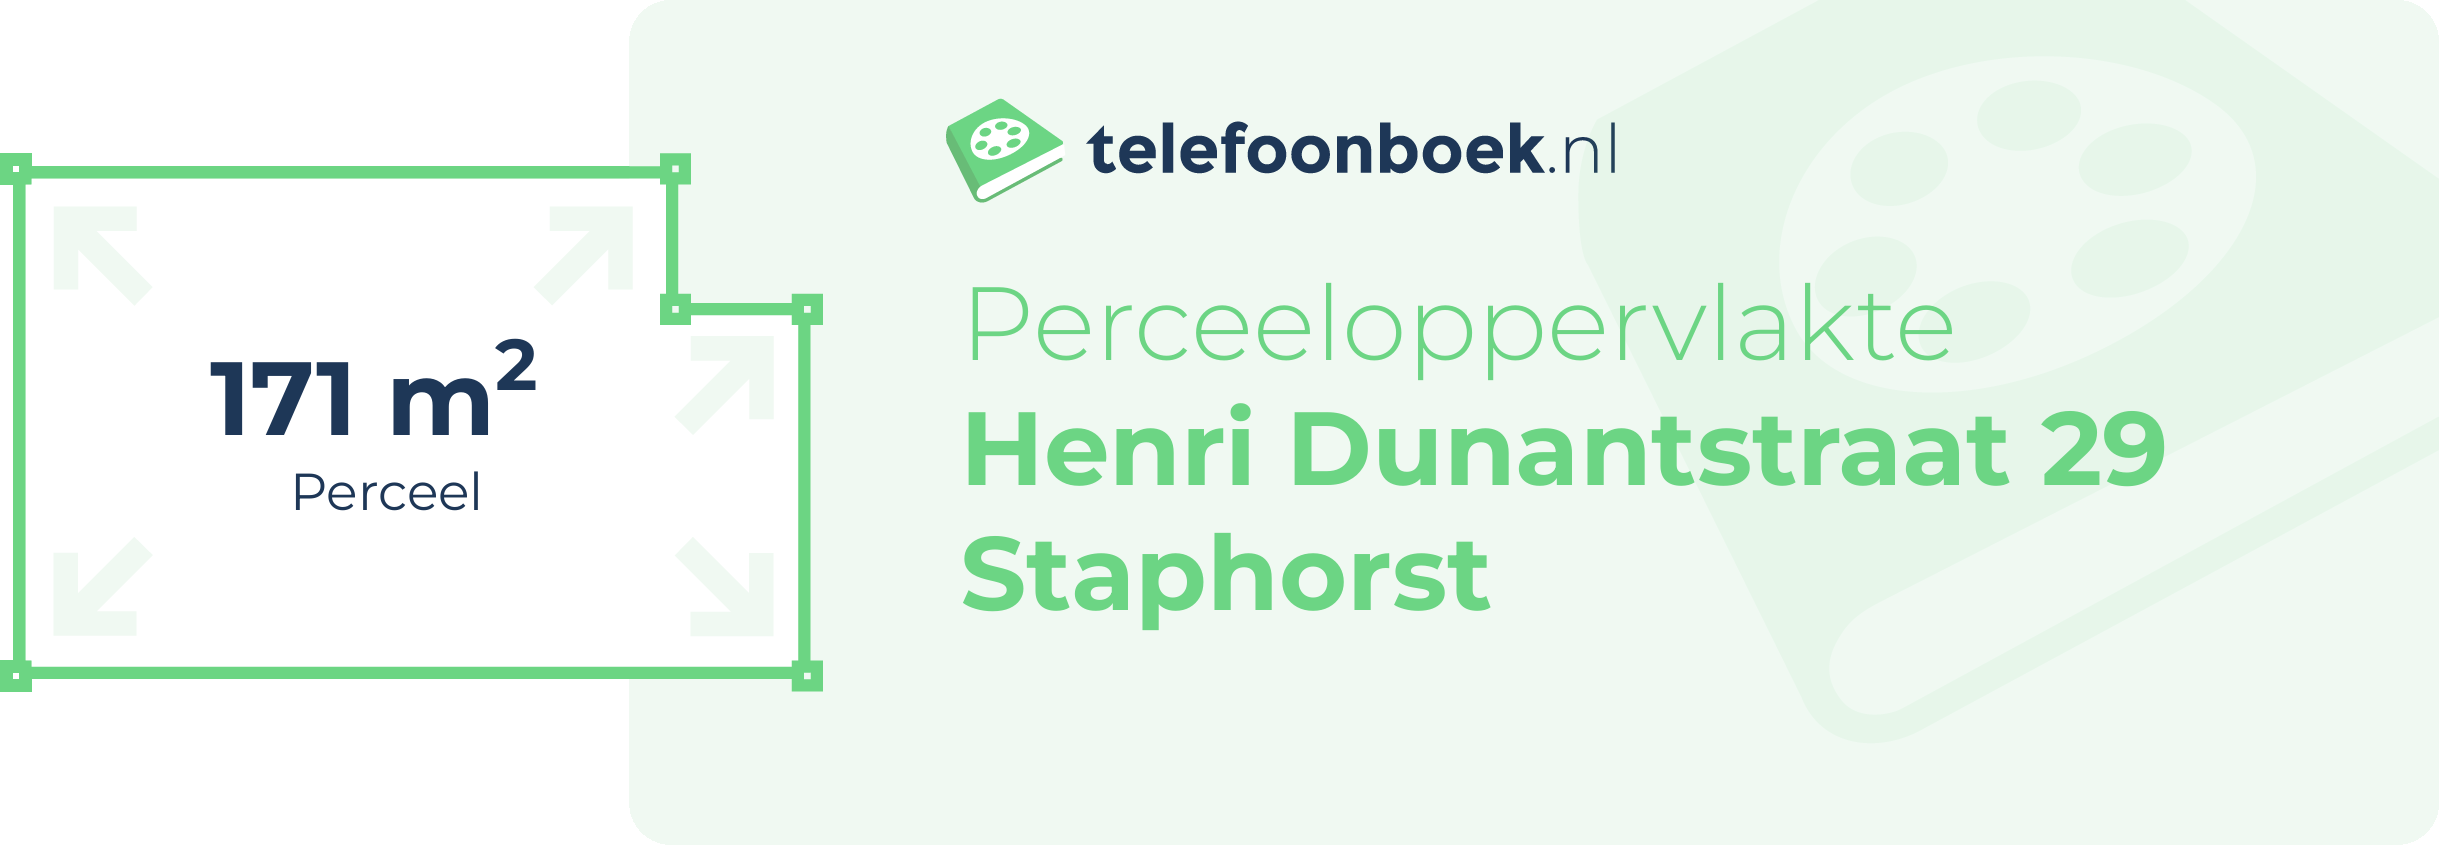 Perceeloppervlakte Henri Dunantstraat 29 Staphorst